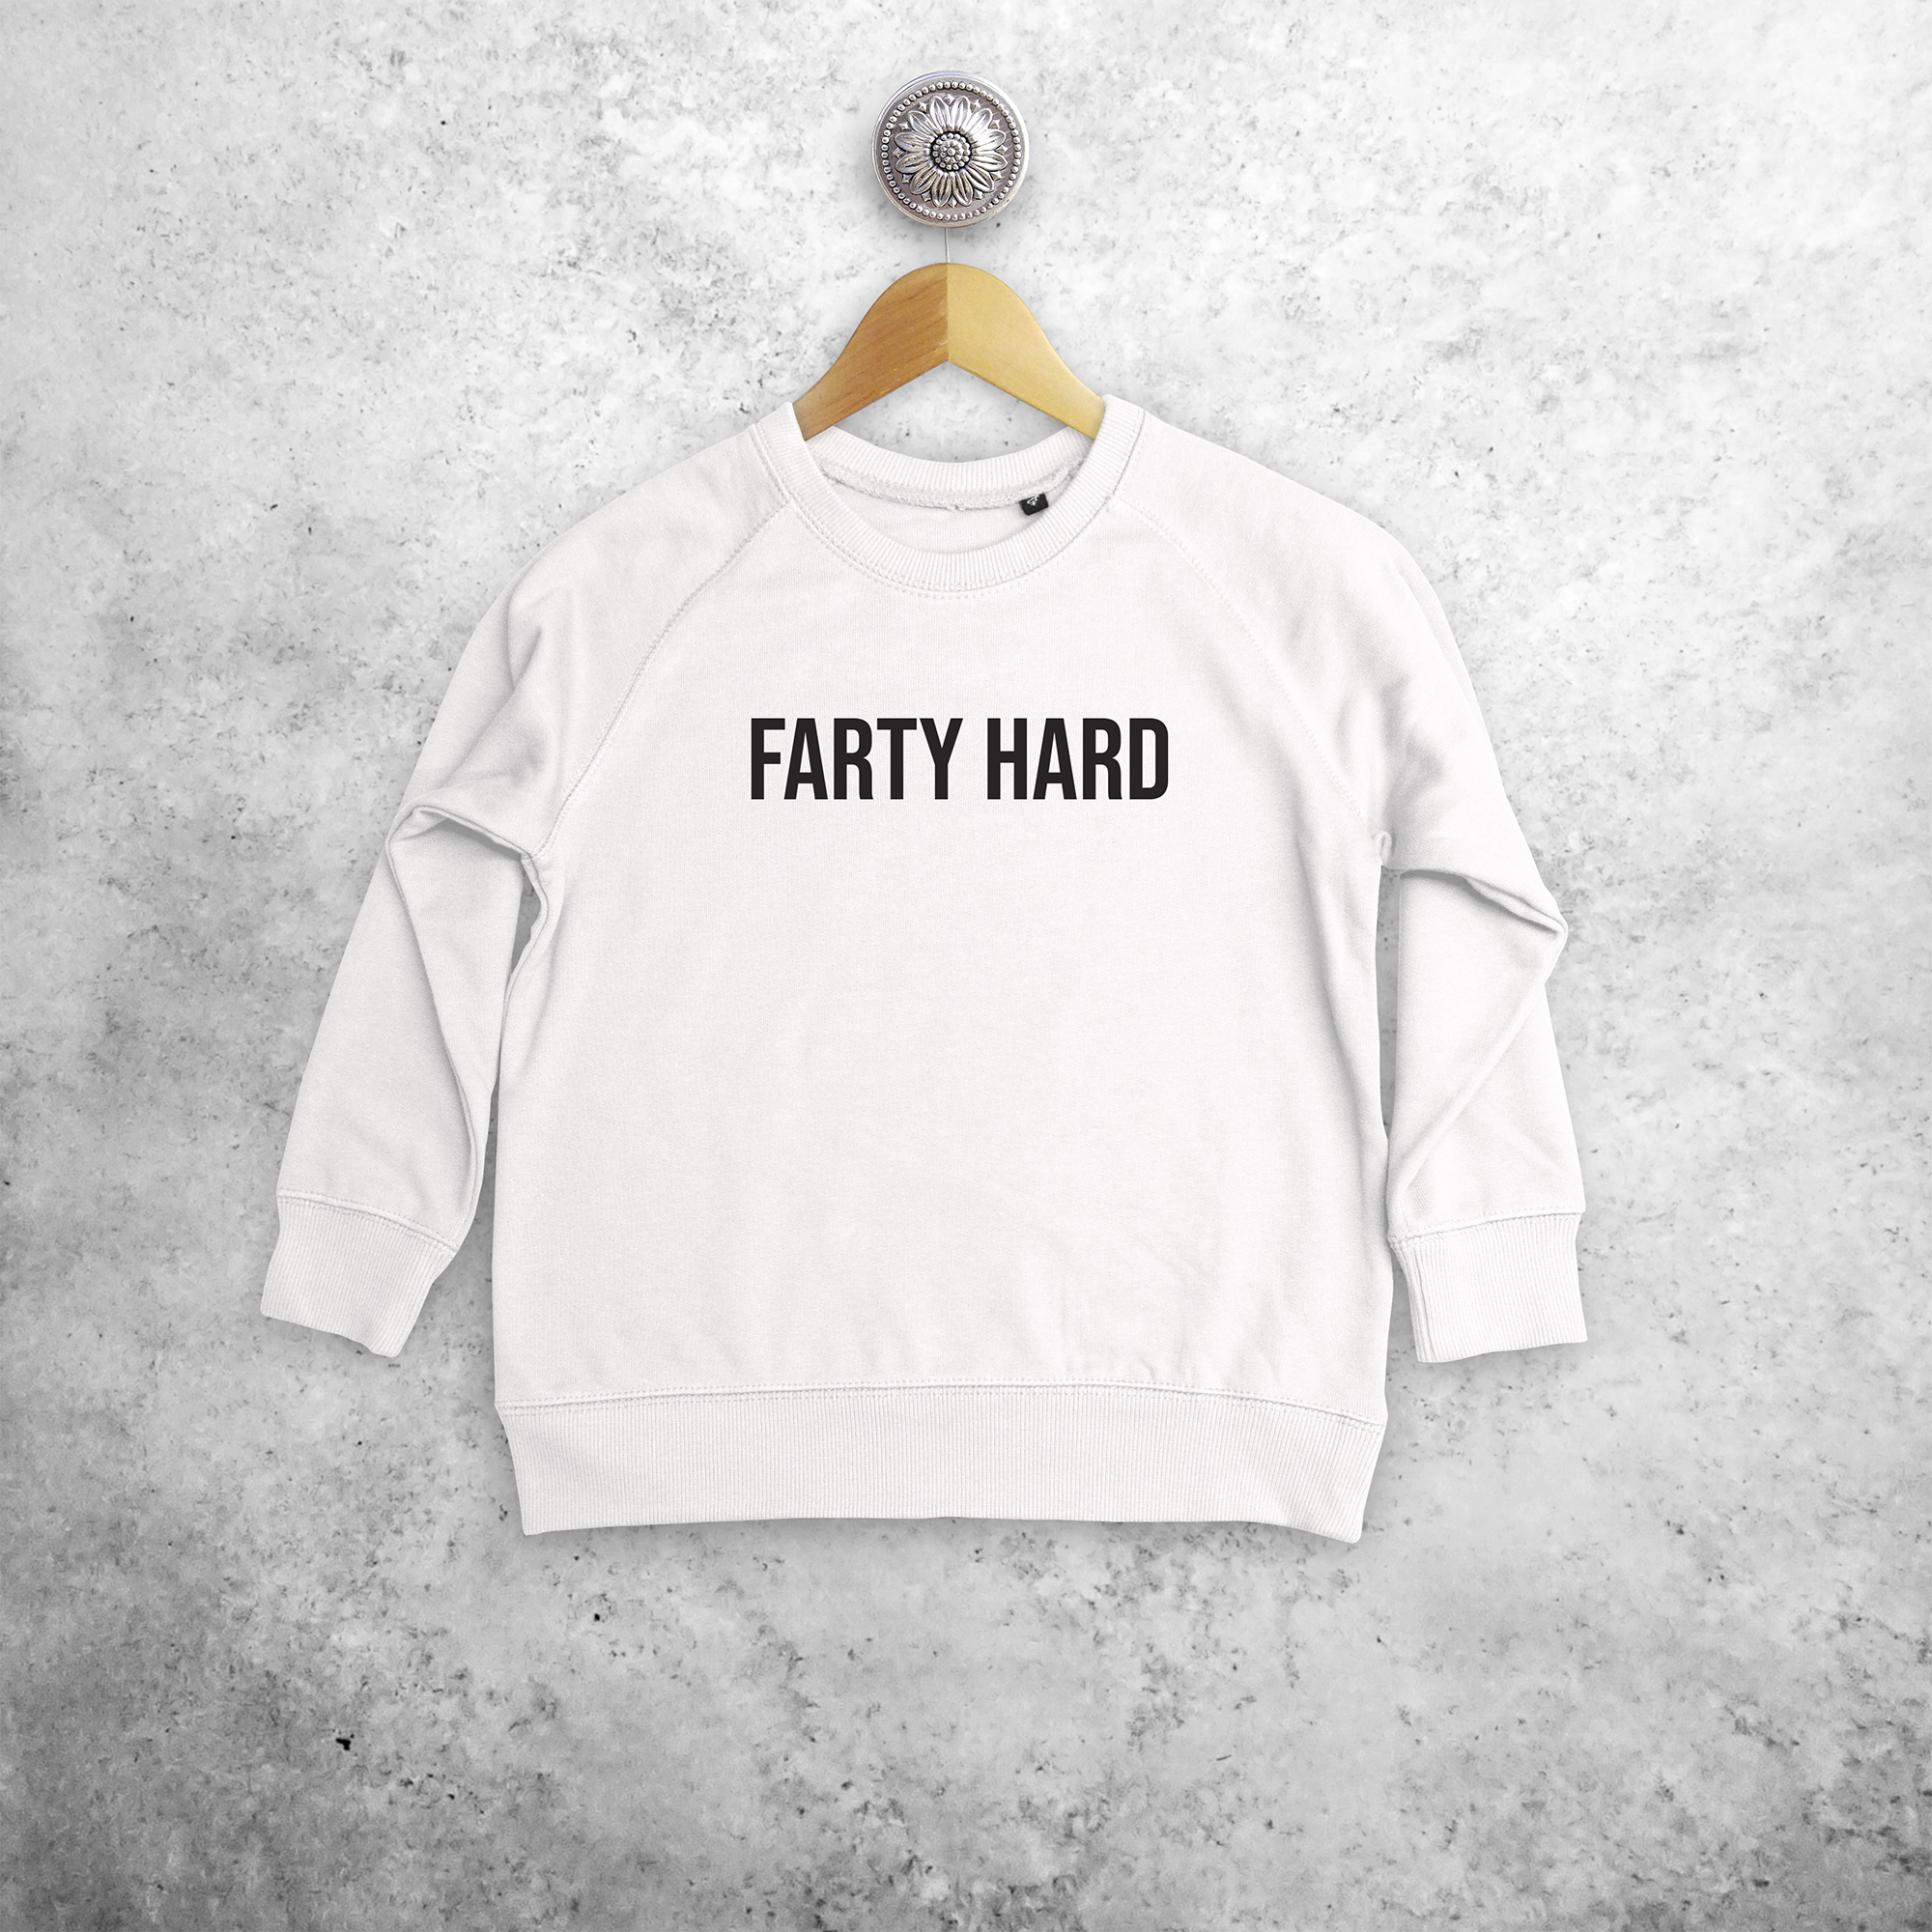 'Farty hard' kids sweater